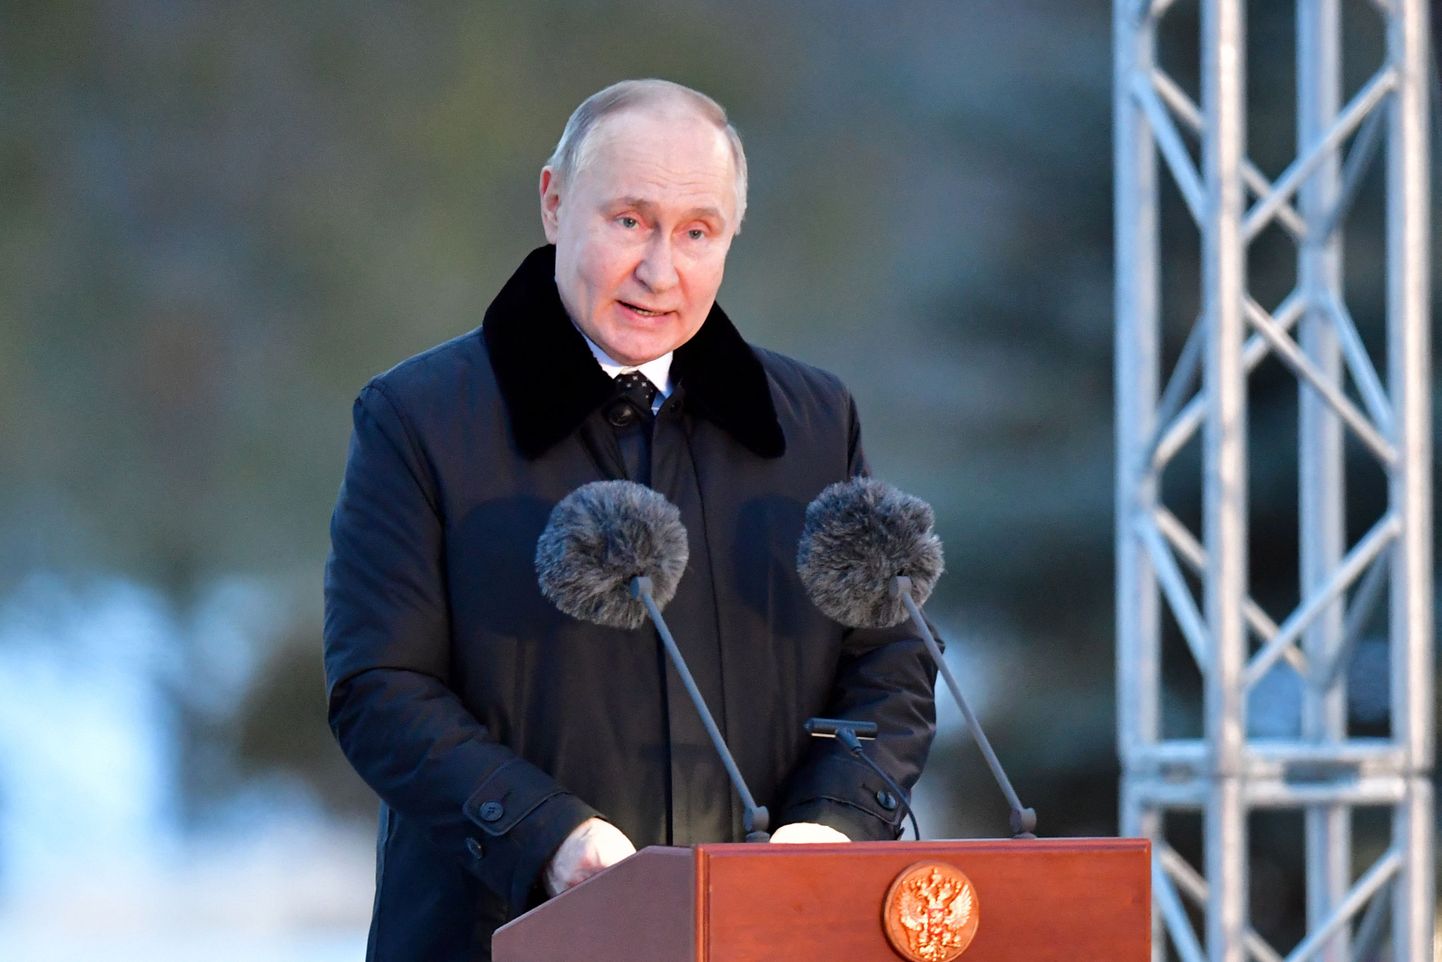 Venemaa president Vladimir Putin peab kõnet 27. jaanuaril 2024 . aastal Leningradi oblastis Zaitsevo küla lähedal teises maailmasõjas hukkunud tsiviilisikute mälestusmärgi avamistseremoonial, mis on osa üritustest, millega tähistatakse Leningradi vabastamist natside blokaadist teise maailmasõja ajal 80. aastapäeva.